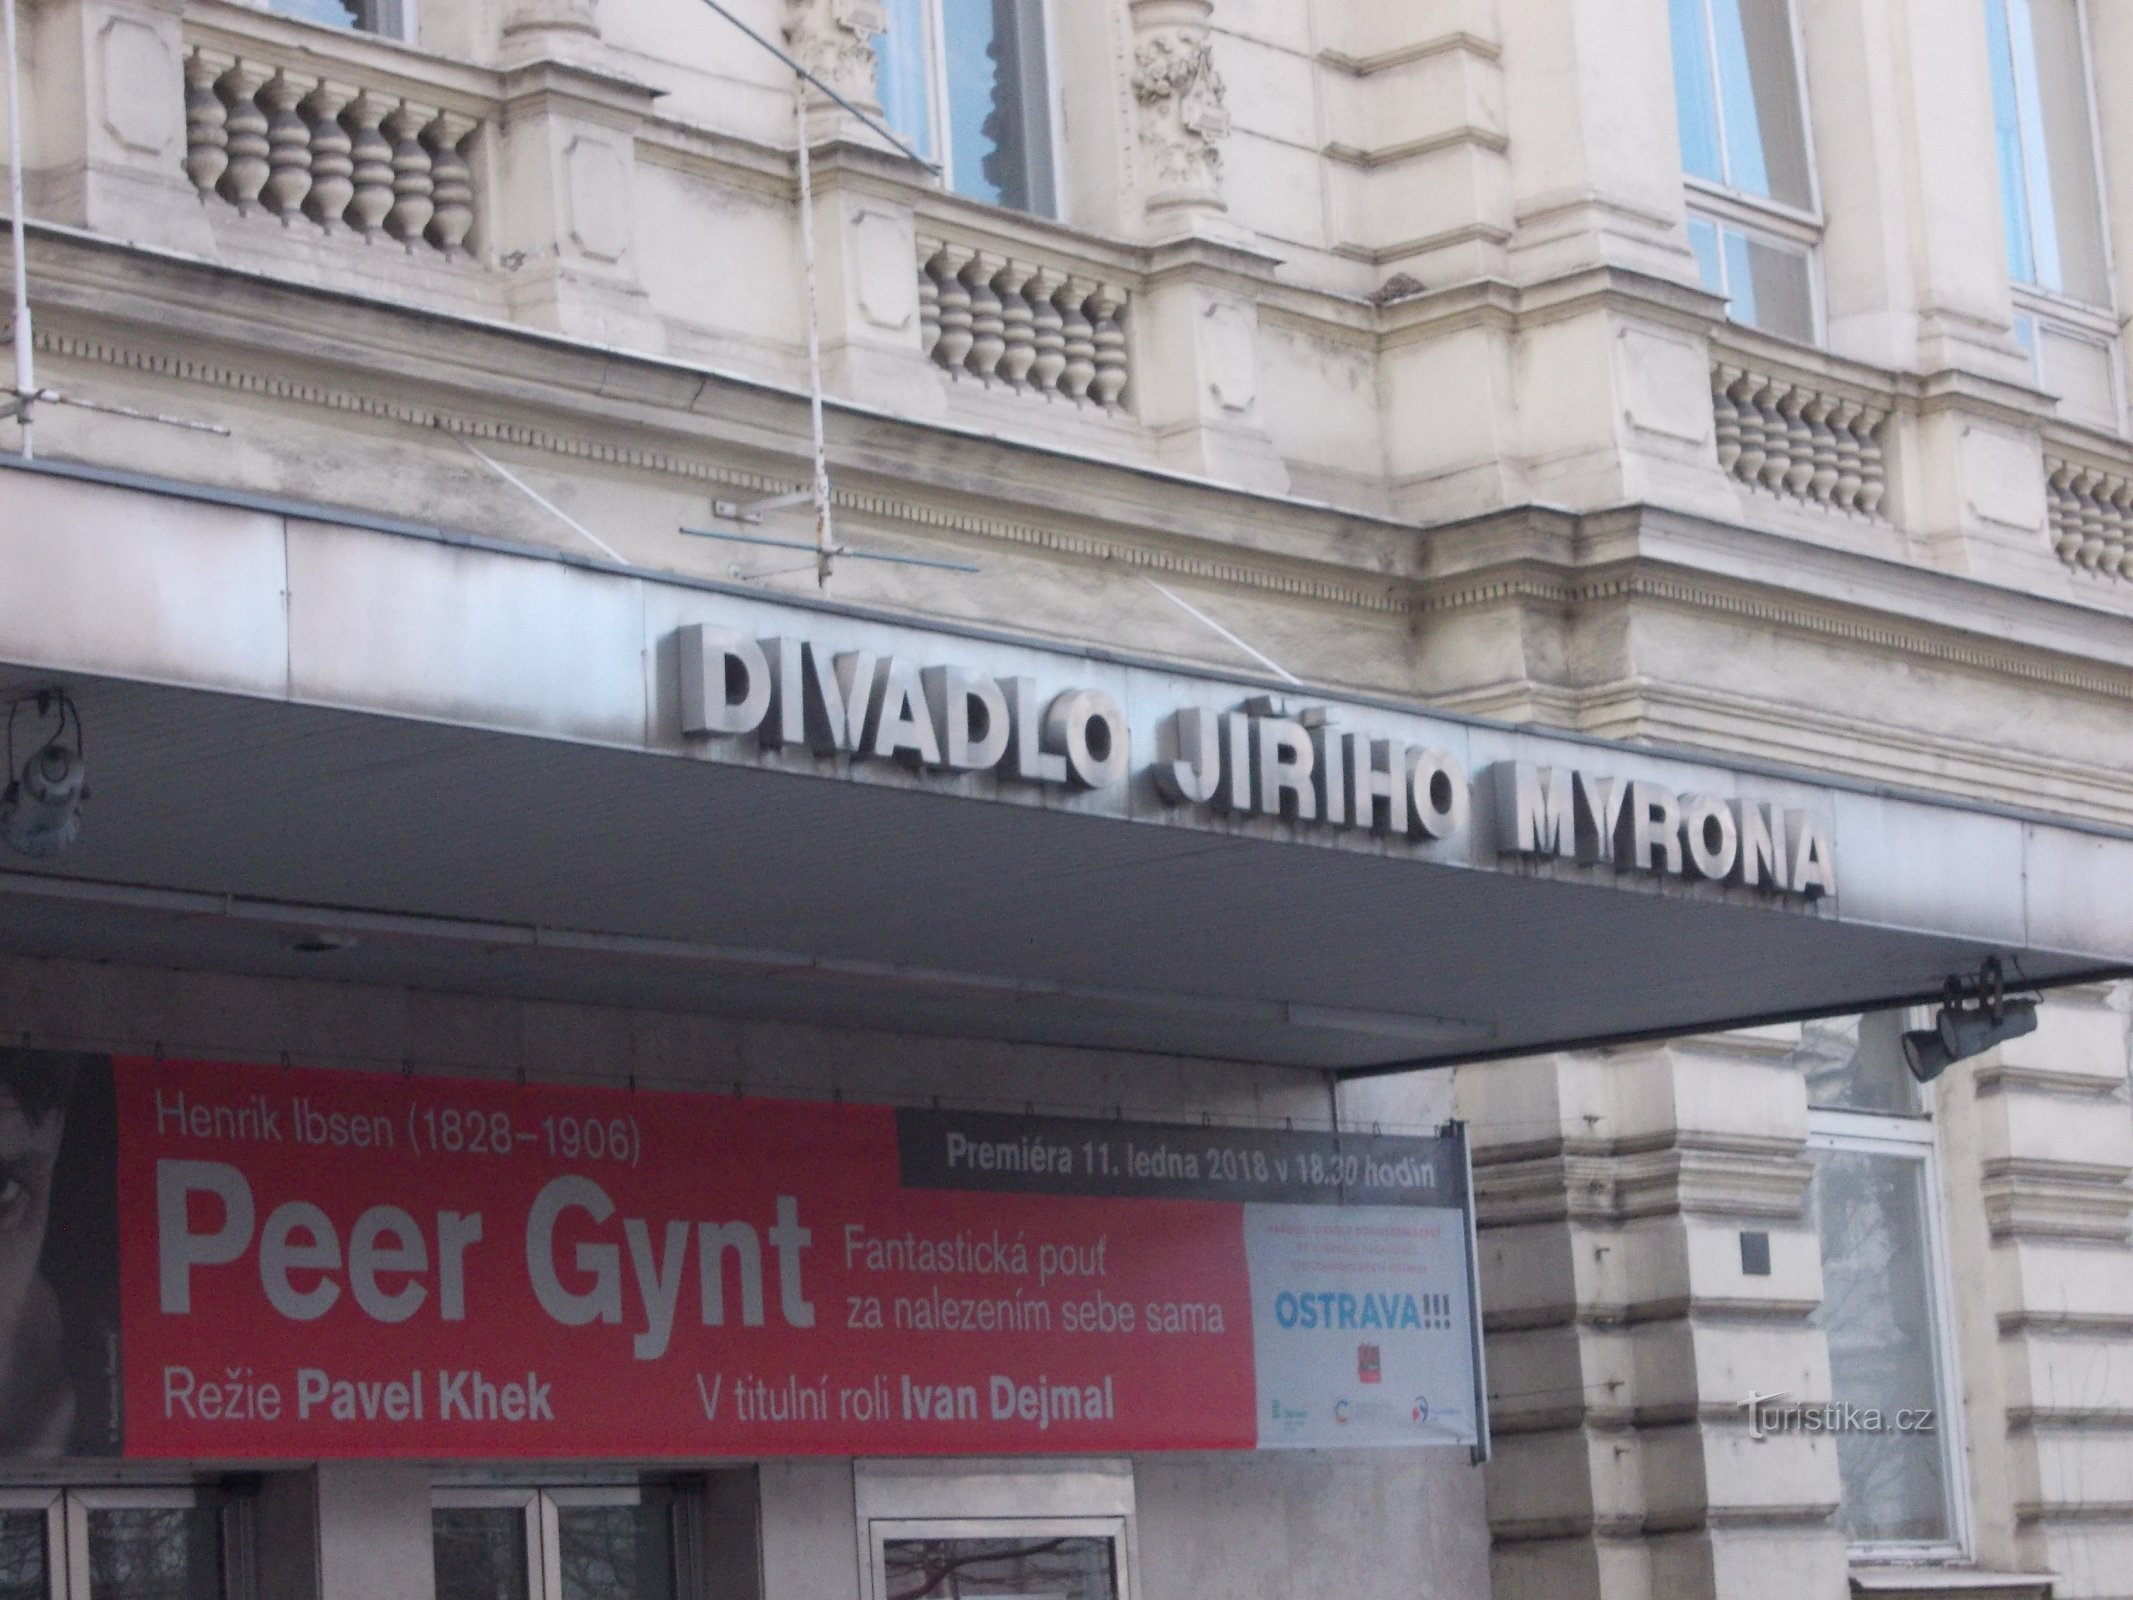 Nhà hát Jiří Myron từ cuối thế kỷ 19 đã trải qua nhiều lần tu bổ cho đến ngày nay